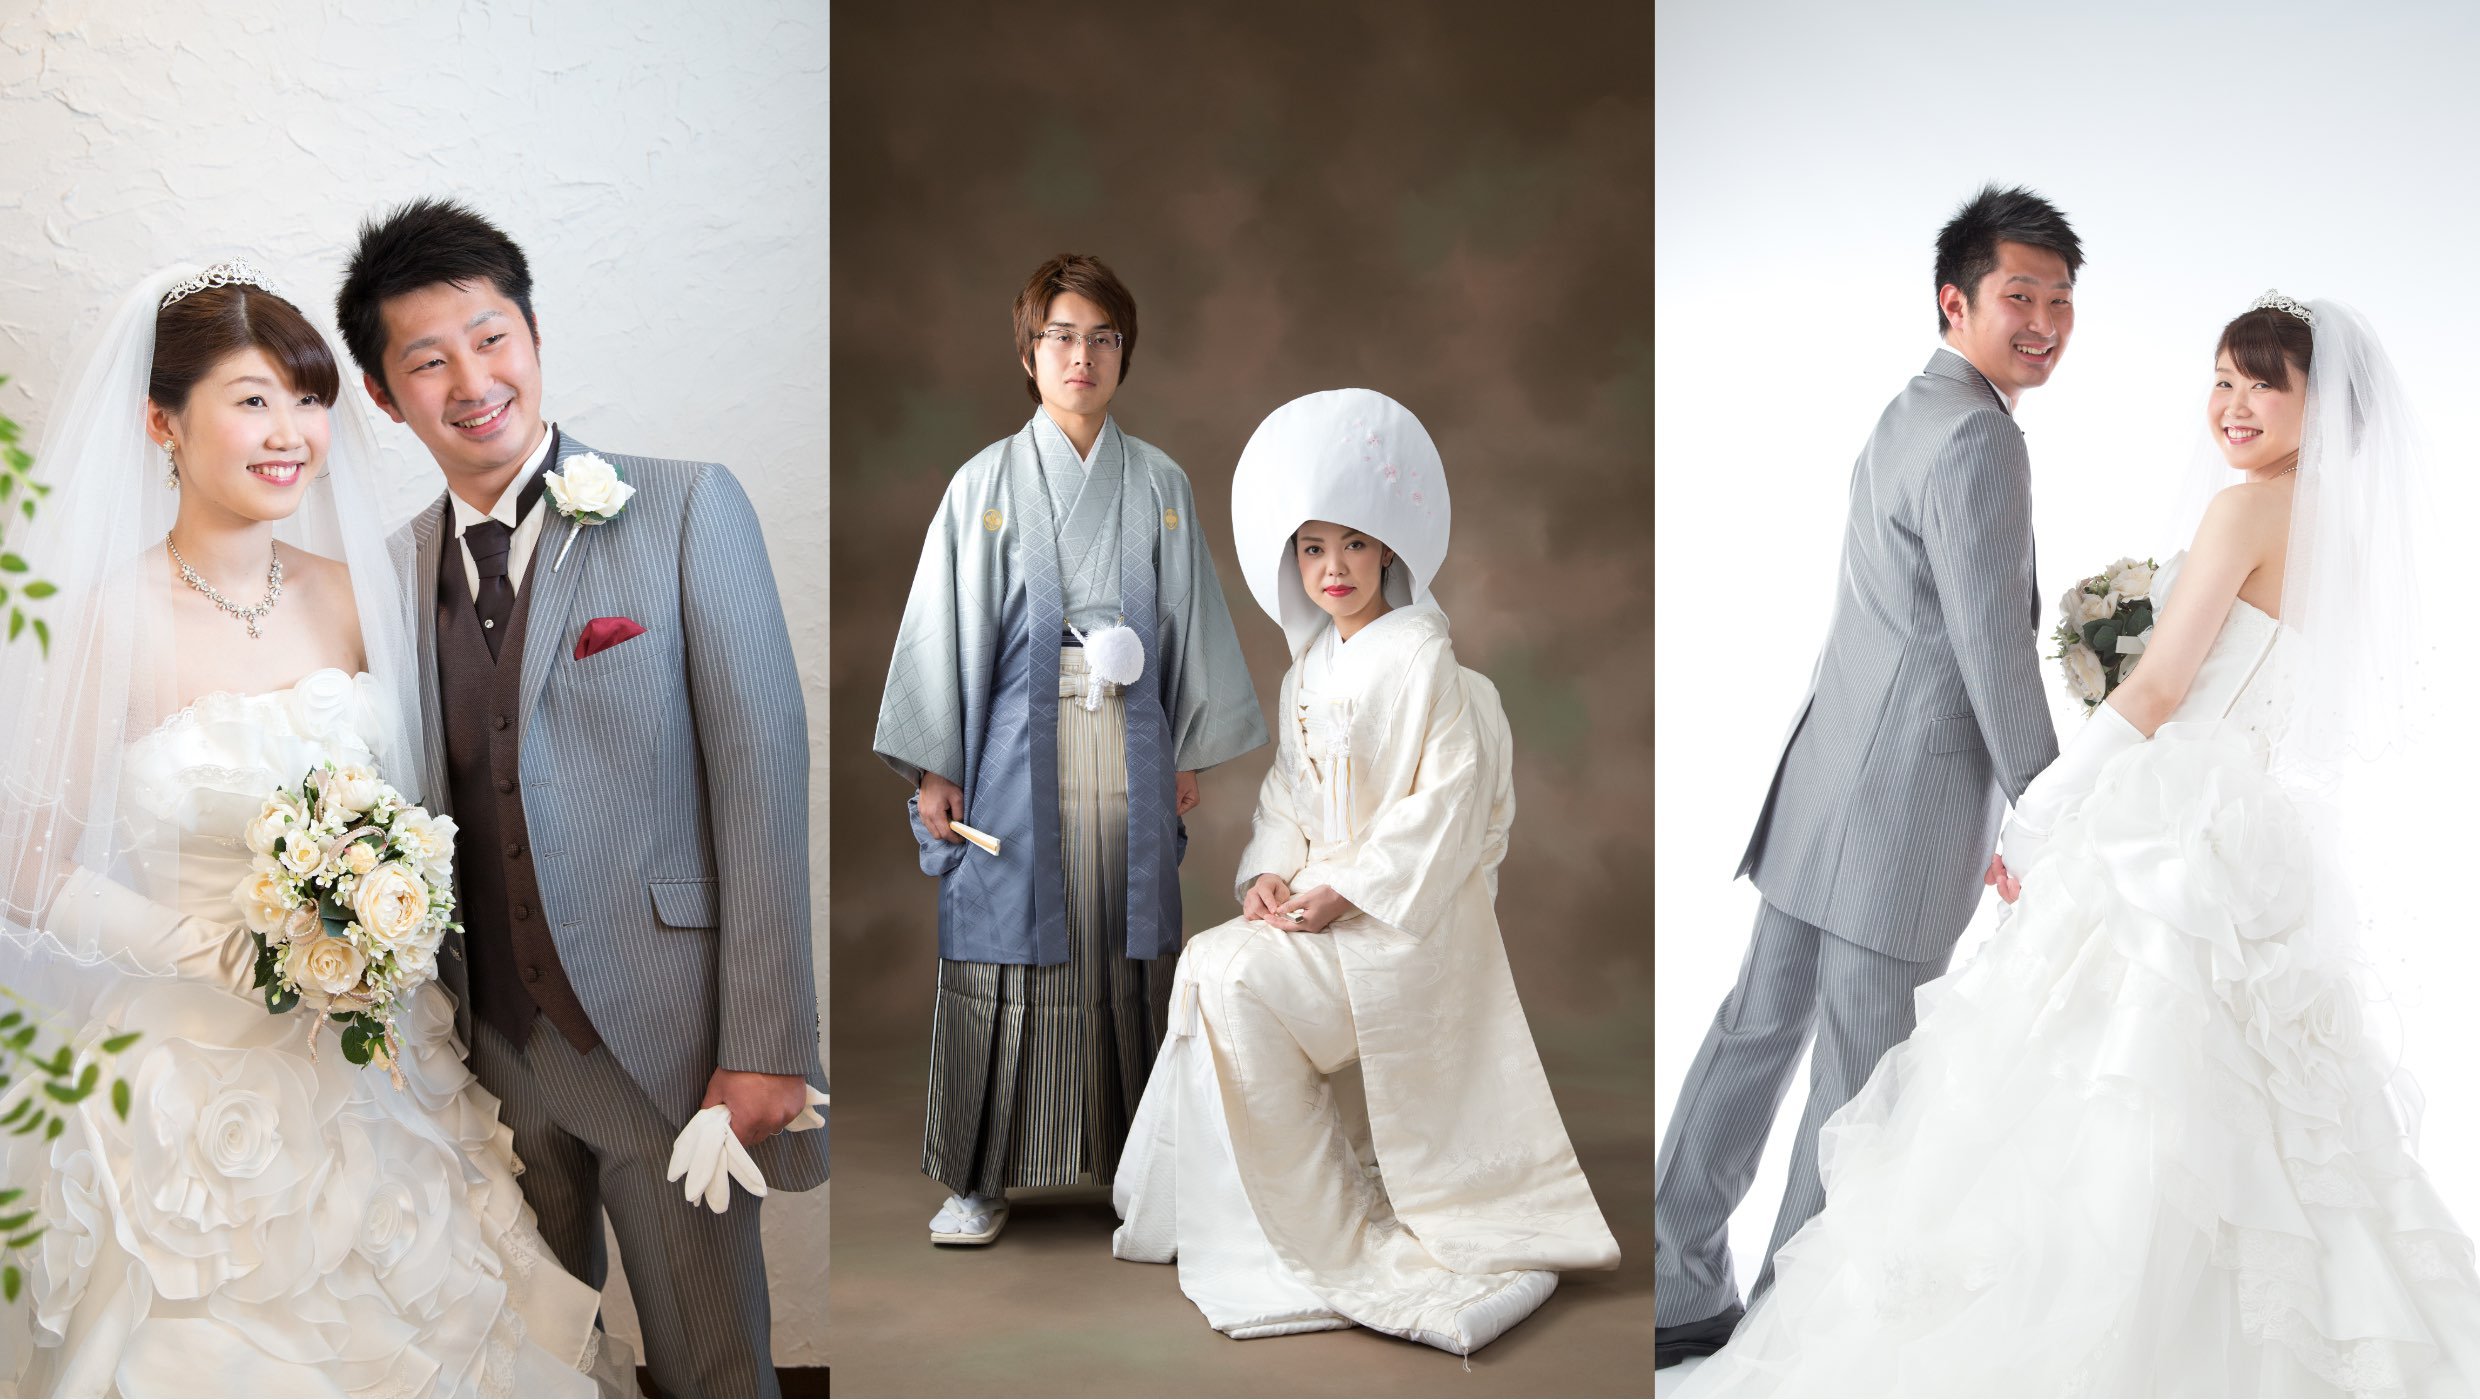 ウェディング・婚礼・結婚記念写真：ウエディングドレスを着た新婦とタキシードを着た新郎の写真と、白無垢を着た新婦と紋付袴を着た新郎の写真